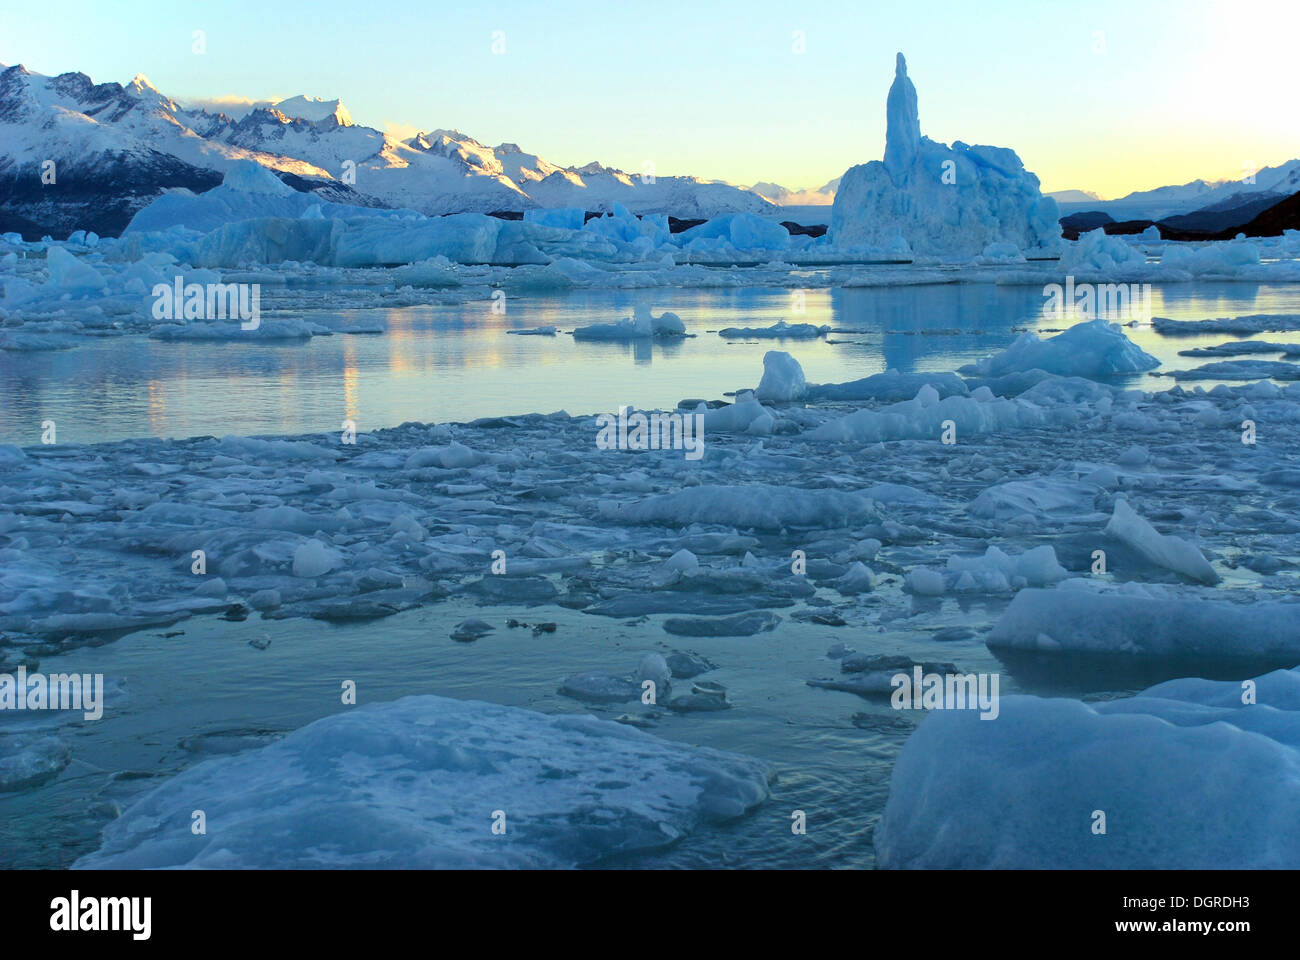 Icebergs in Lago Argentino, El Calafate, Patagonia, Argentina, South America Stock Photo